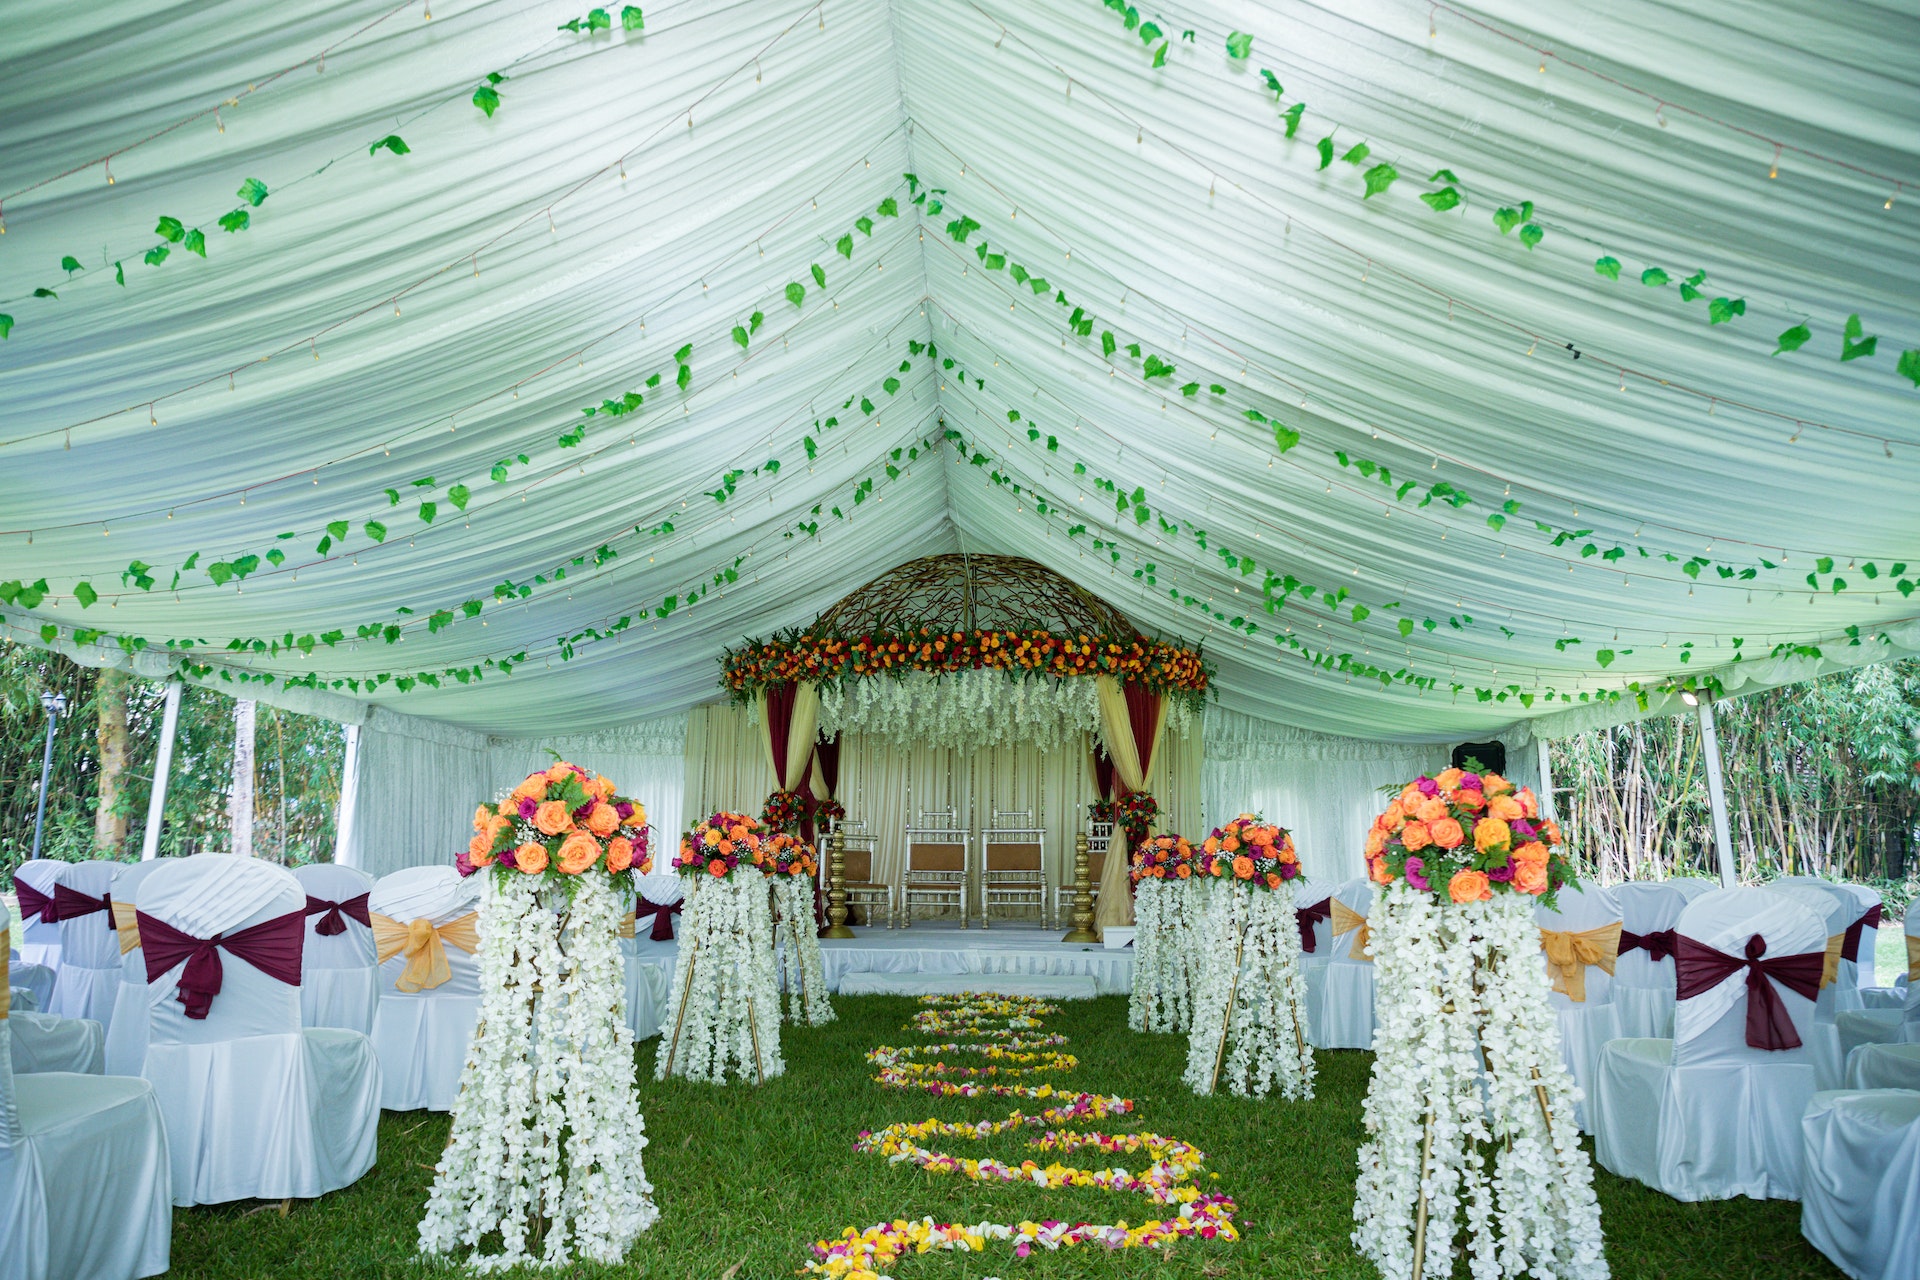 Une installation de mariage à l'intérieur d'une tente | Source : Pexels